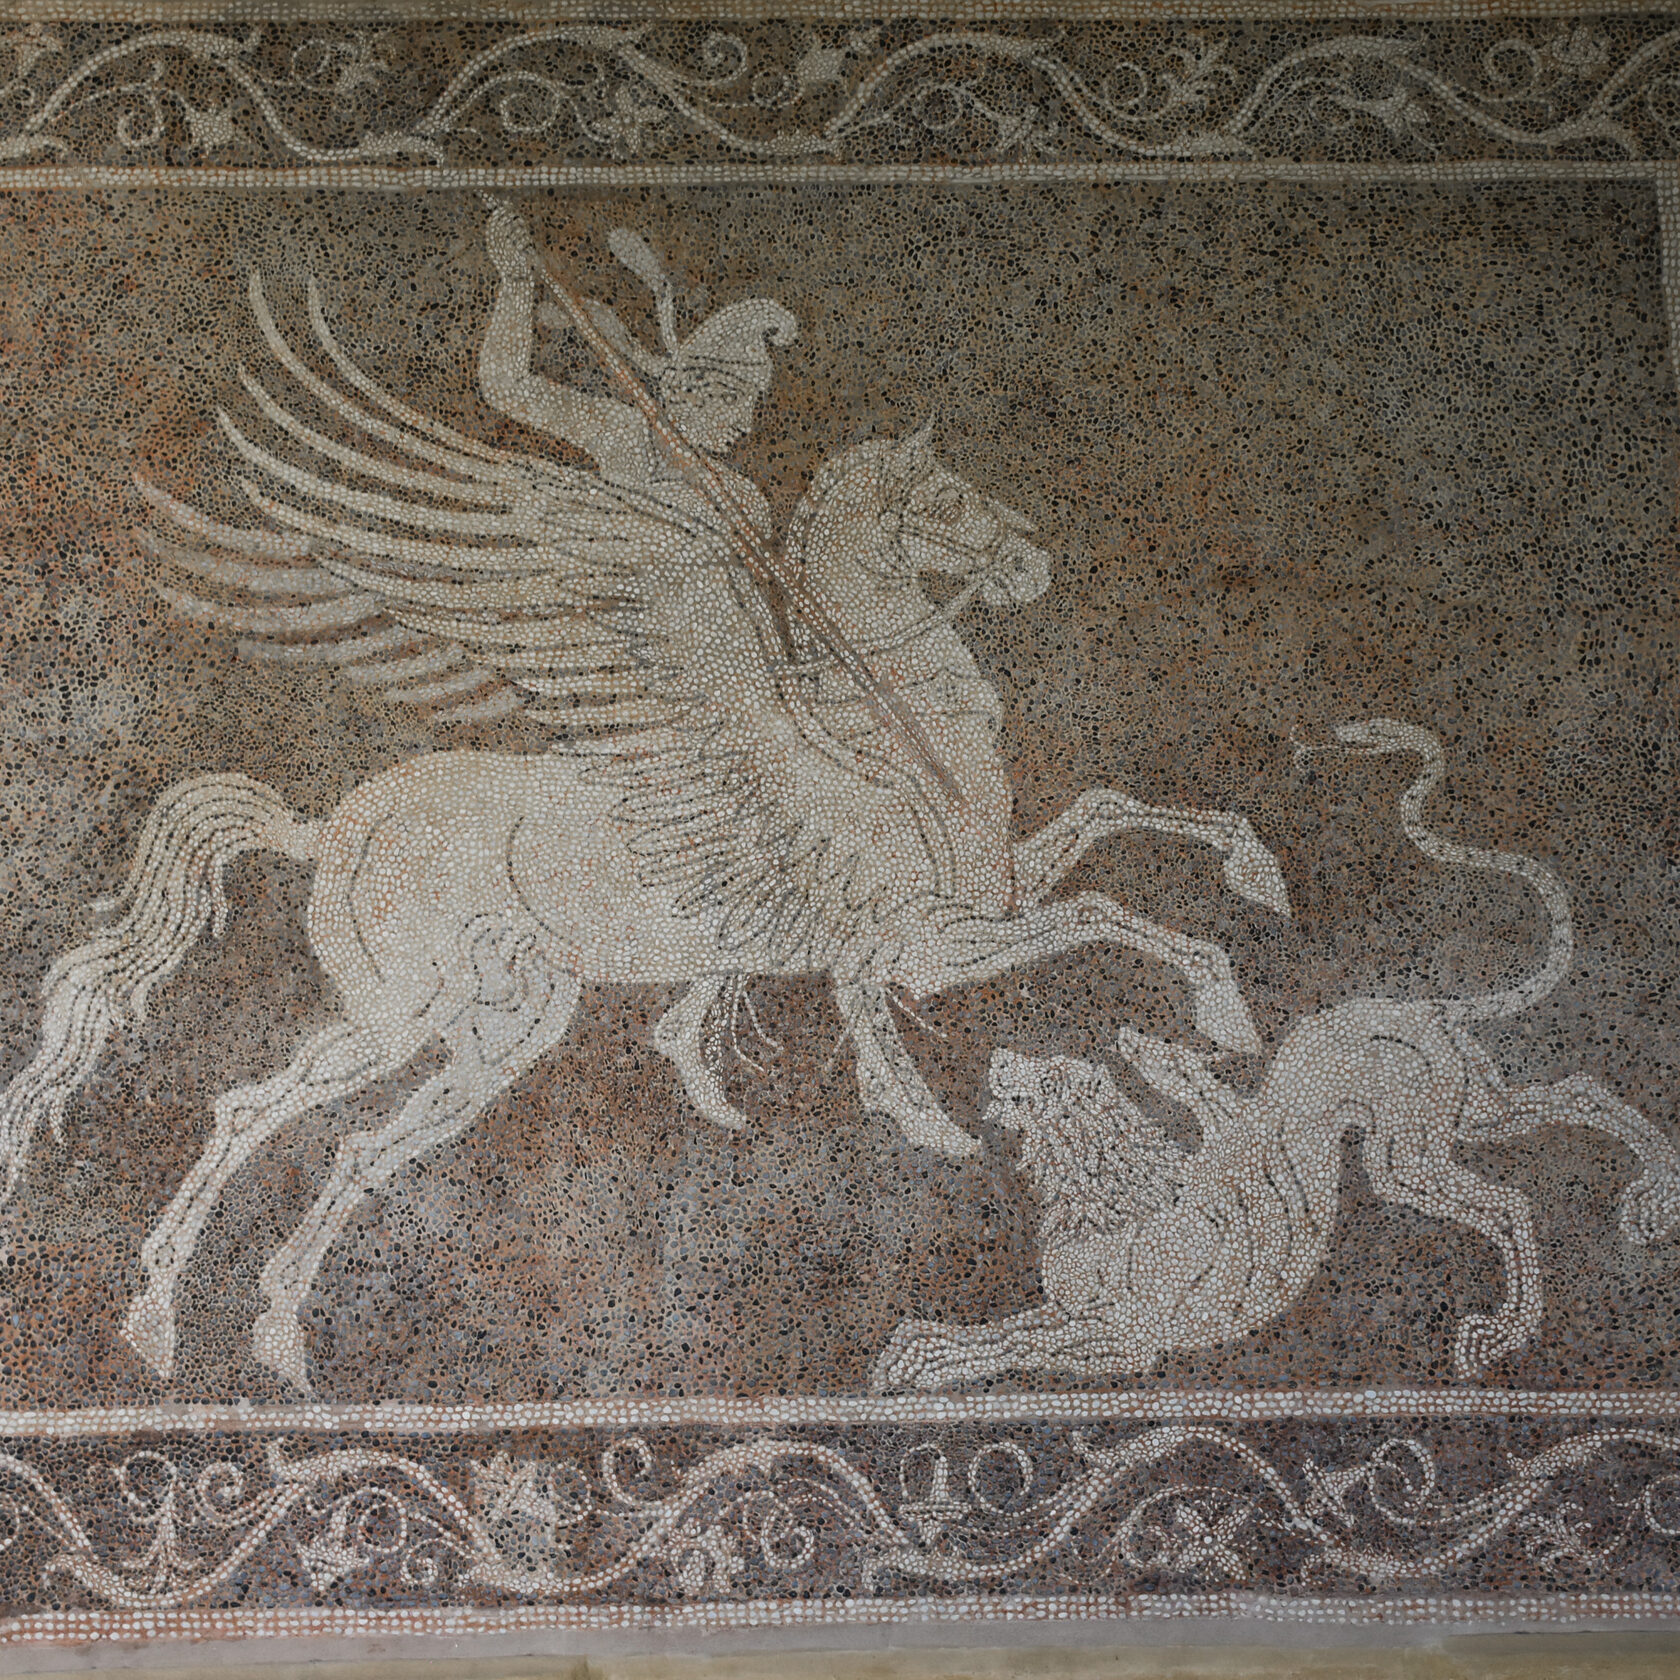 Напольная мозаика в археологическом музее Родоса